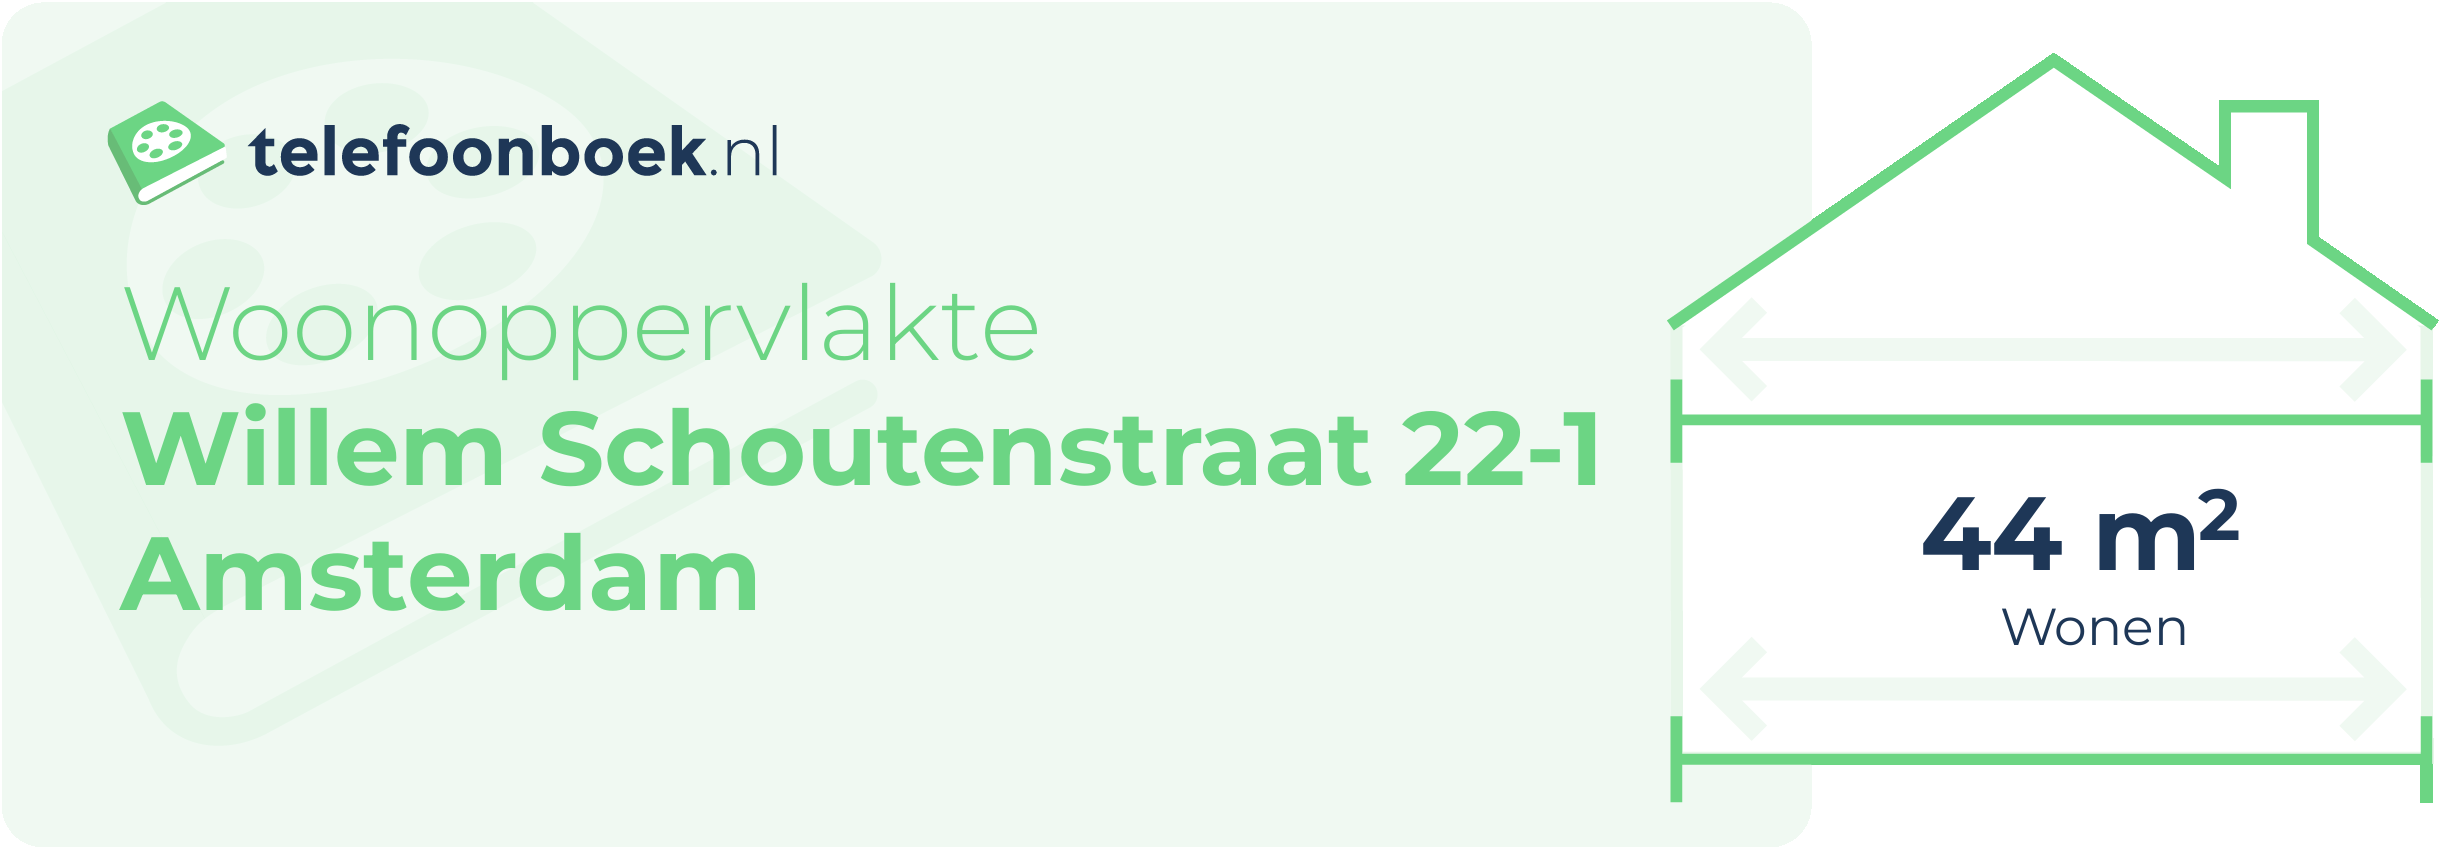 Woonoppervlakte Willem Schoutenstraat 22-1 Amsterdam